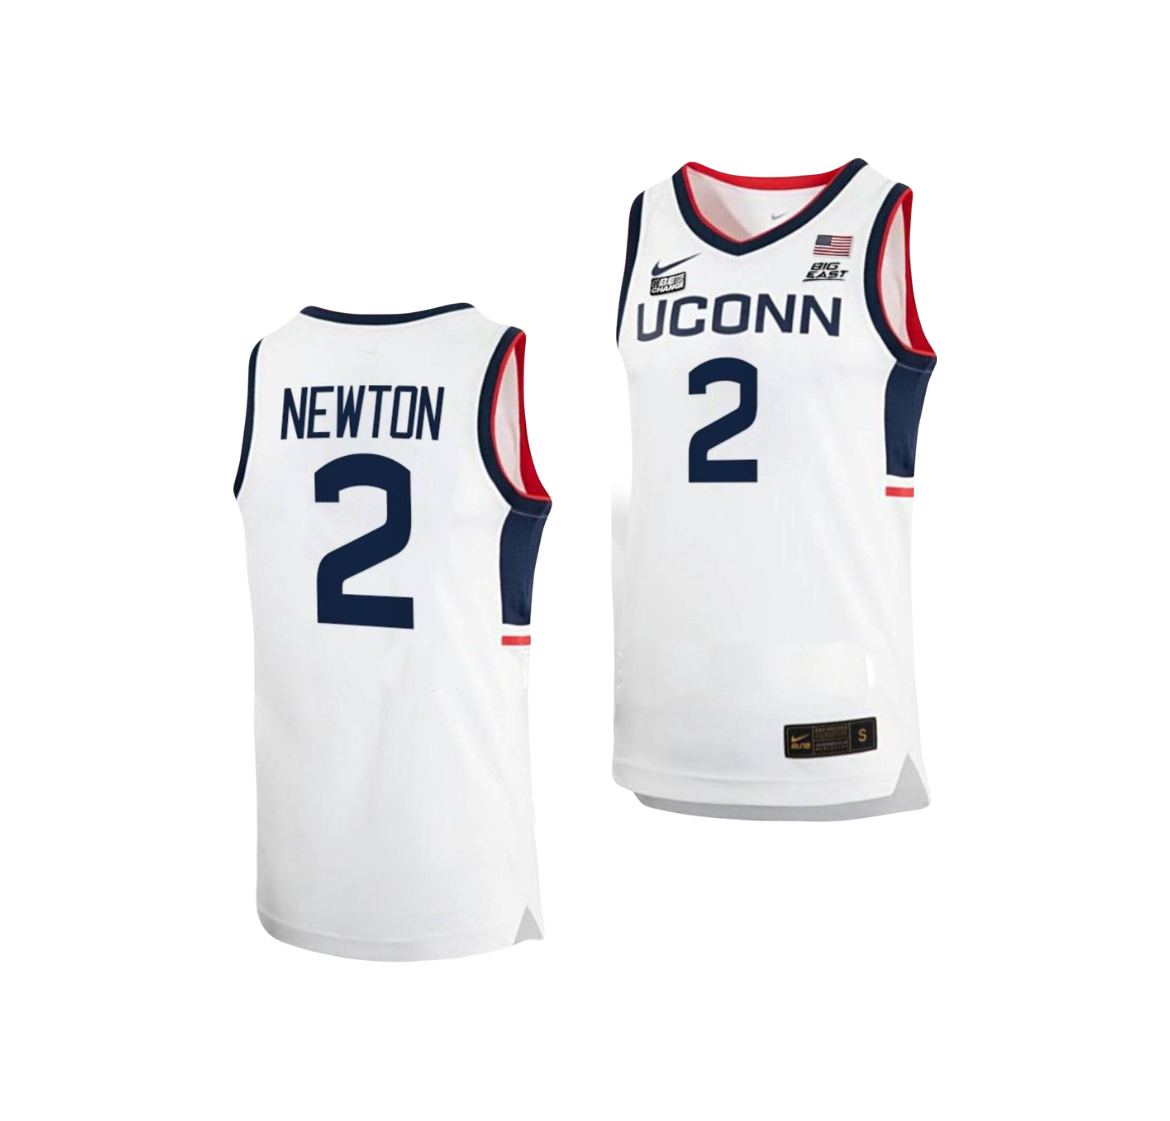 UConn Huskies Tristen Newton NCAA Campus Legend College Basketball Jersey - White